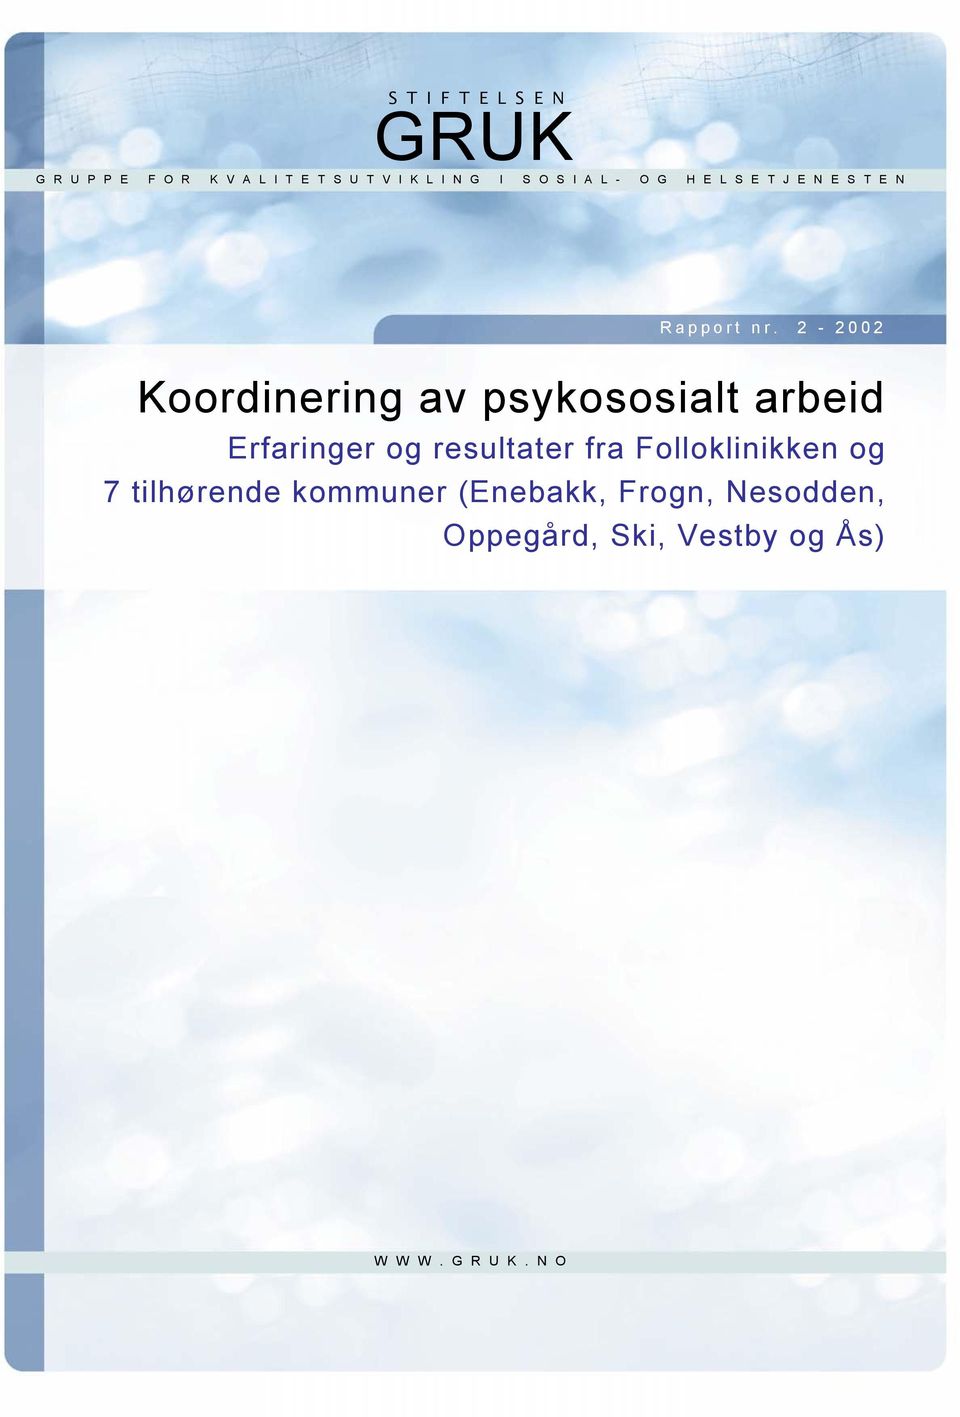 2-2002 Koordinering av psykososialt arbeid Erfaringer og resultater fra